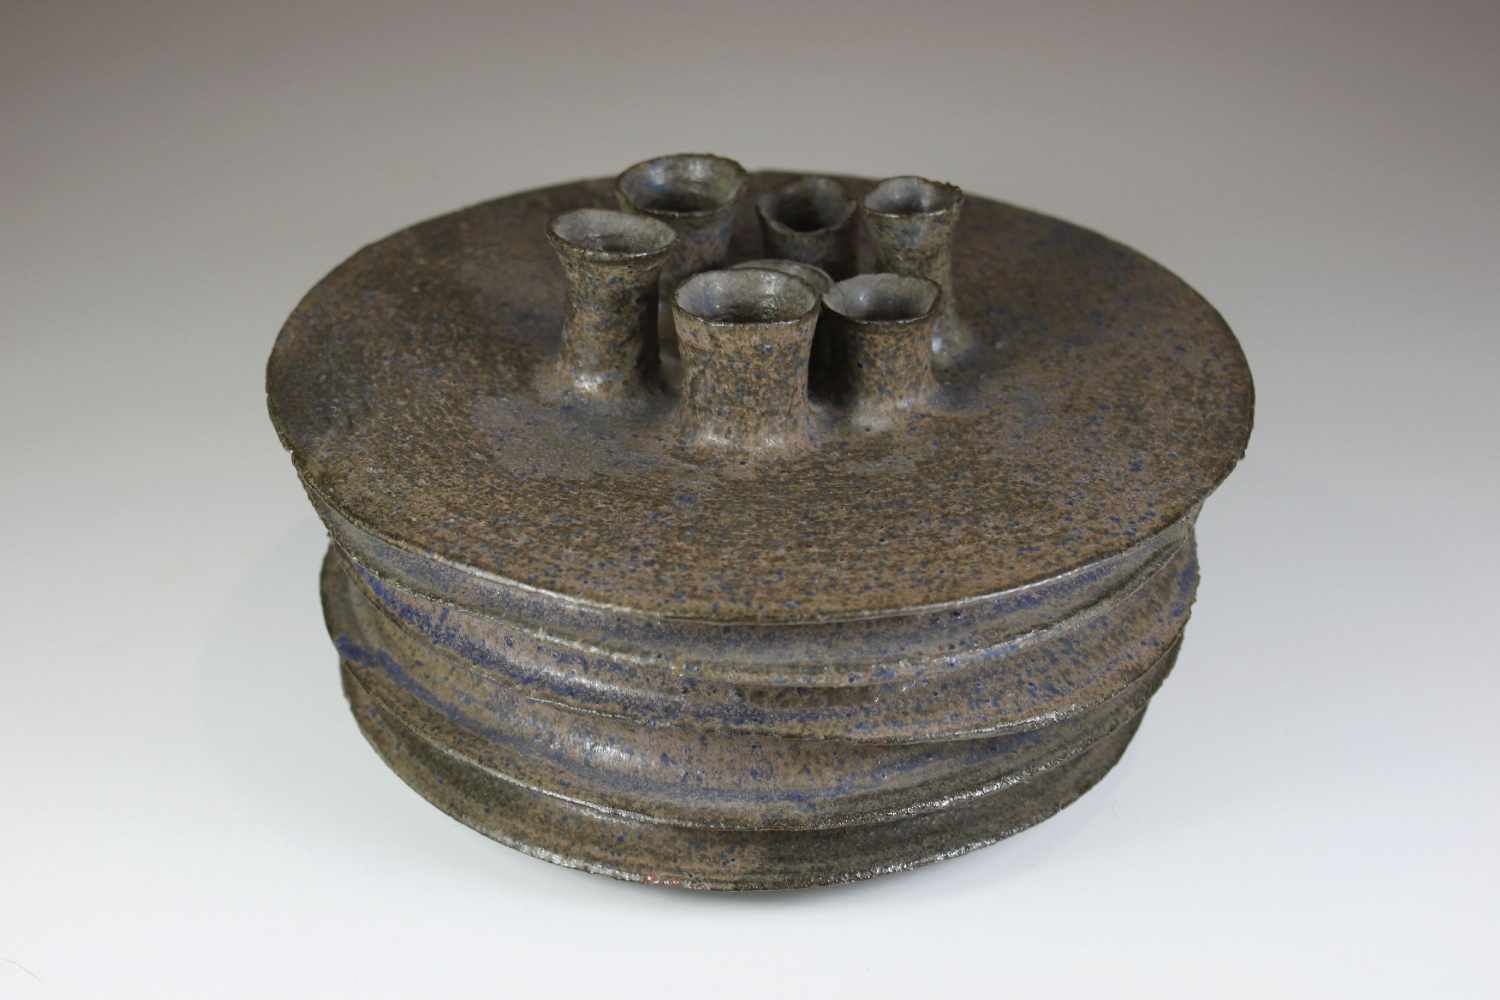 Keramikvase, sieben schmale Öffnungen, braun-grau mit blauen Elemten, Ritzmarke am Boden, datiert